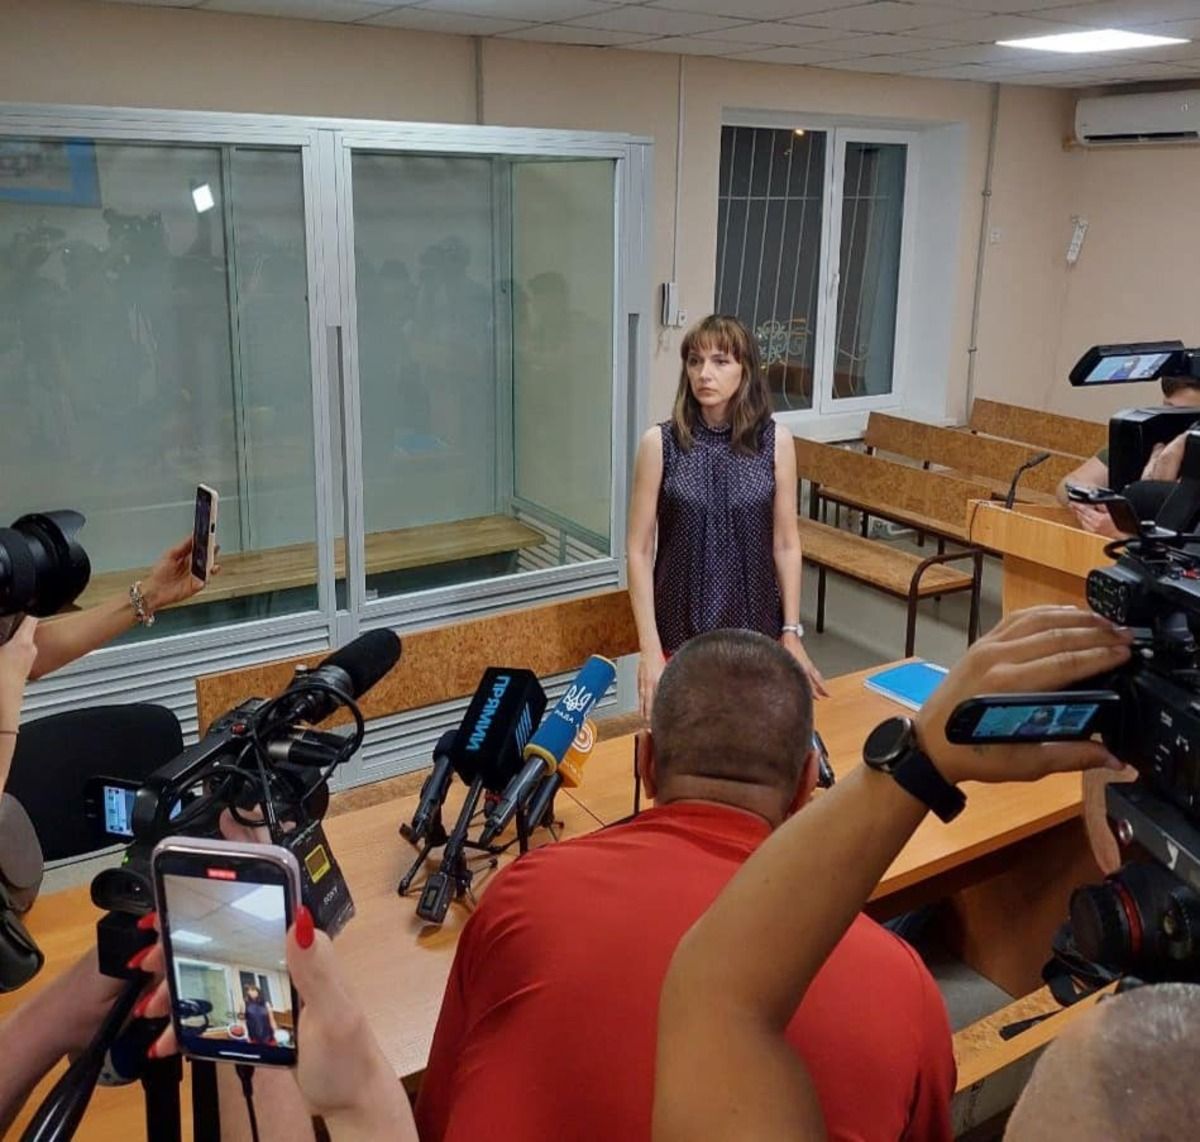 Егору Звонкову избрали меру пресечения - что его адвокат сказала в суде - 24 Канал